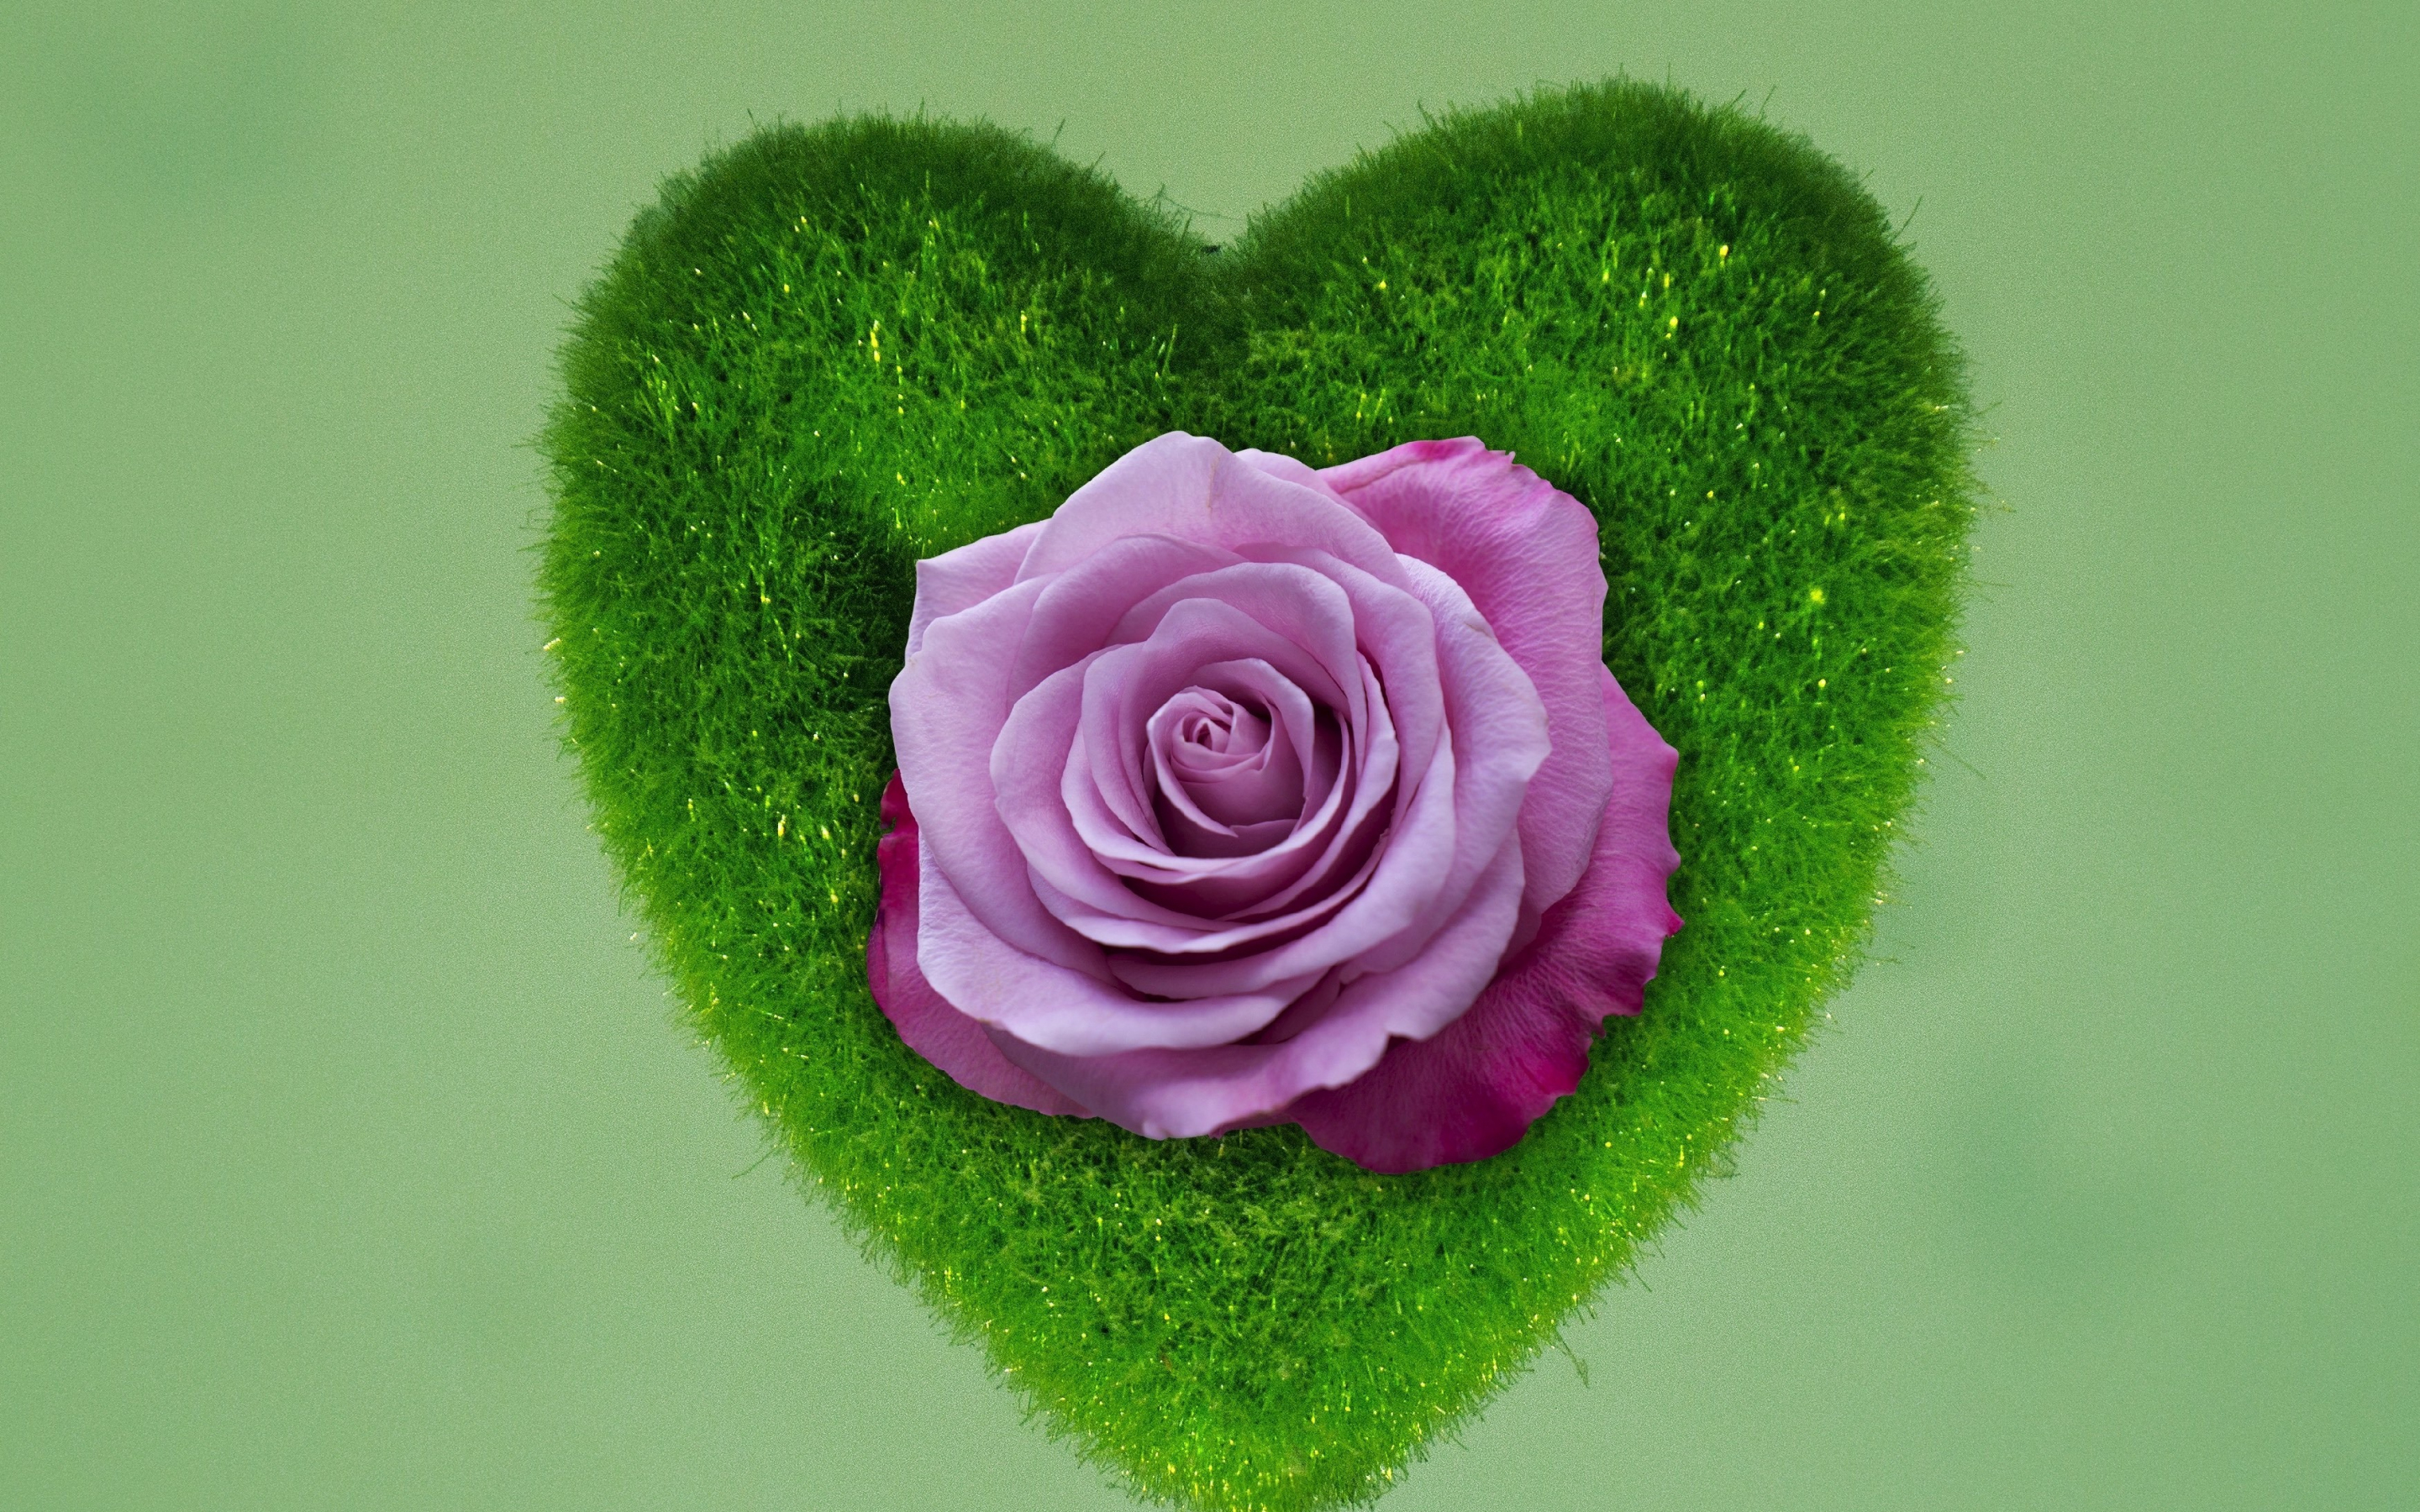 Heart, rose, grass, 2880x1800 wallpaper